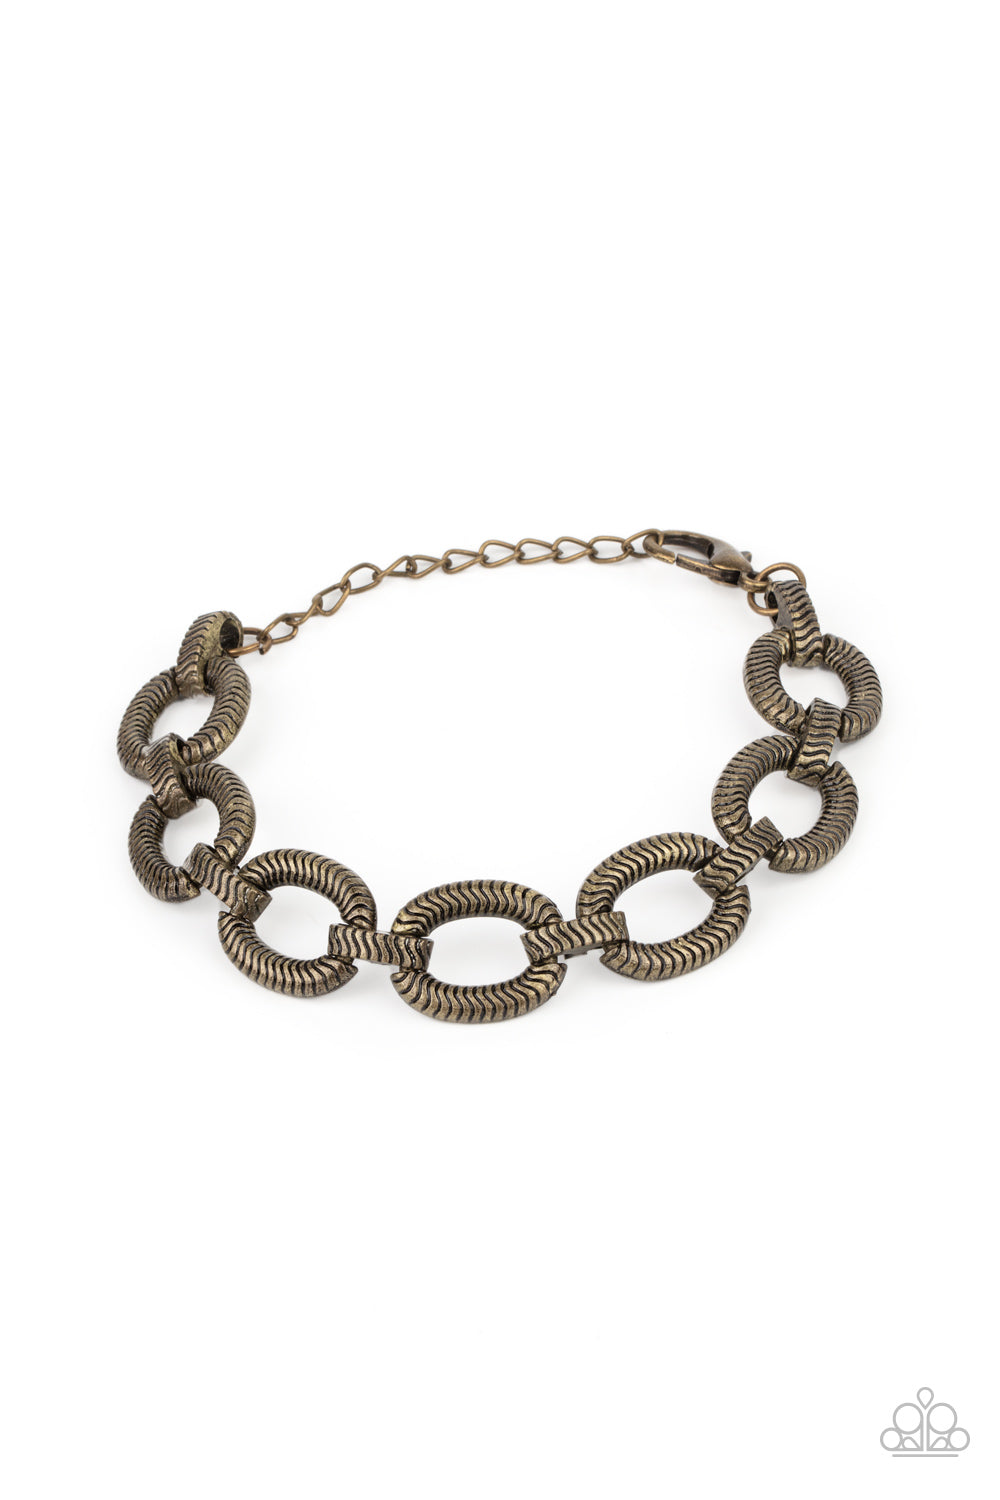 Paparazzi - Industrial Amazon - Brass Bracelet